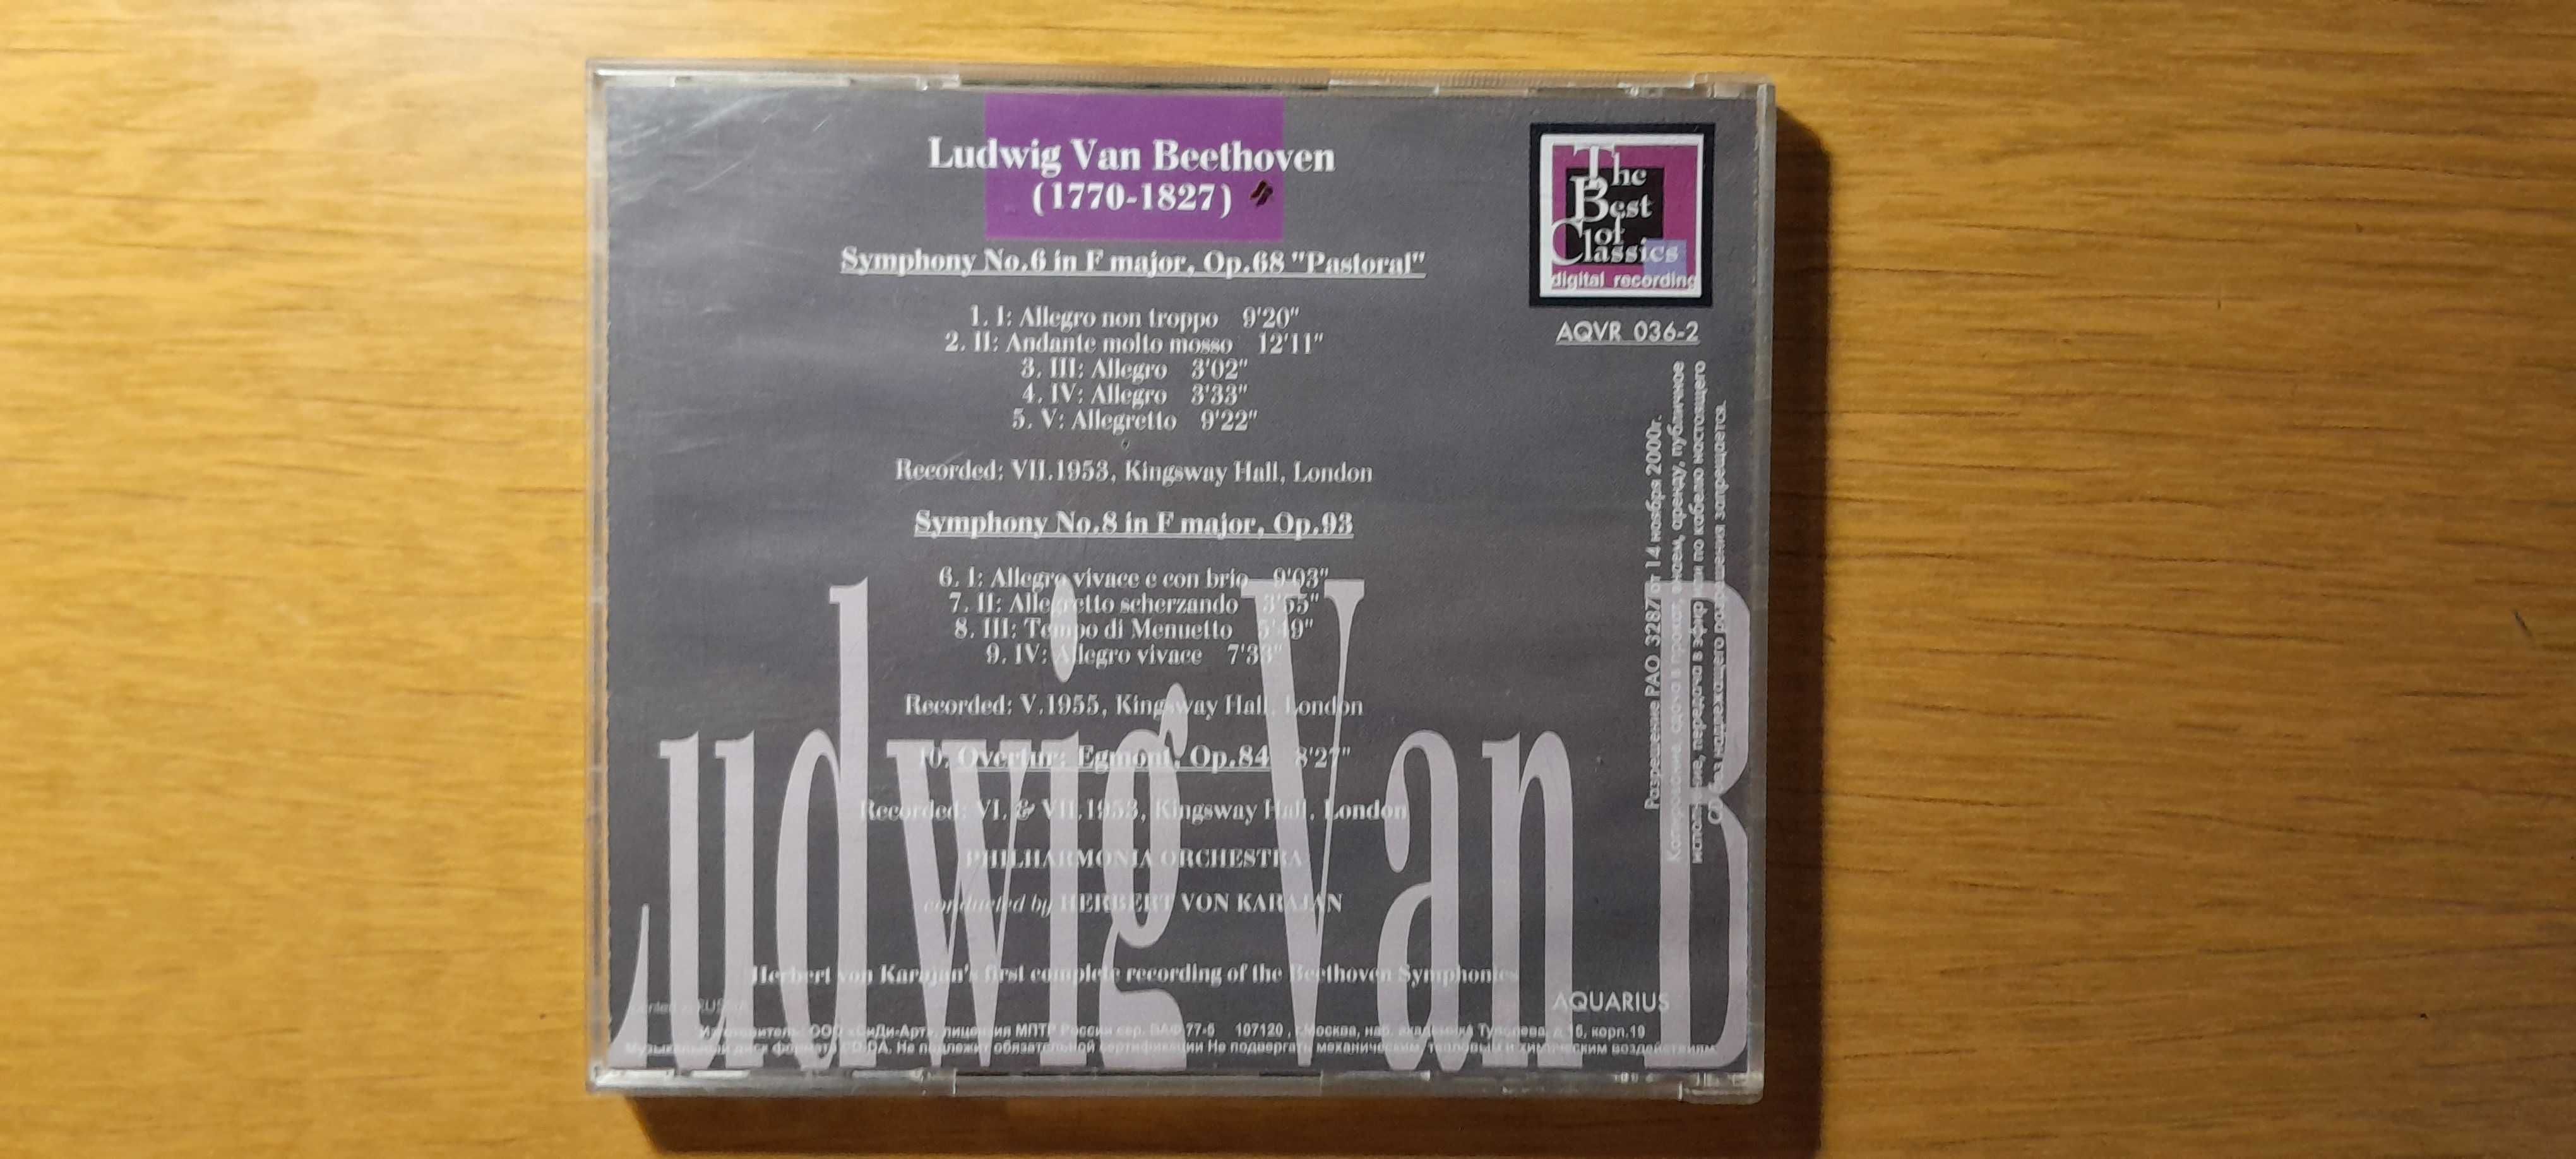 Людвиг ван Бетховен "Симфонии. Увертюры". "Сонаты". CD-диски.